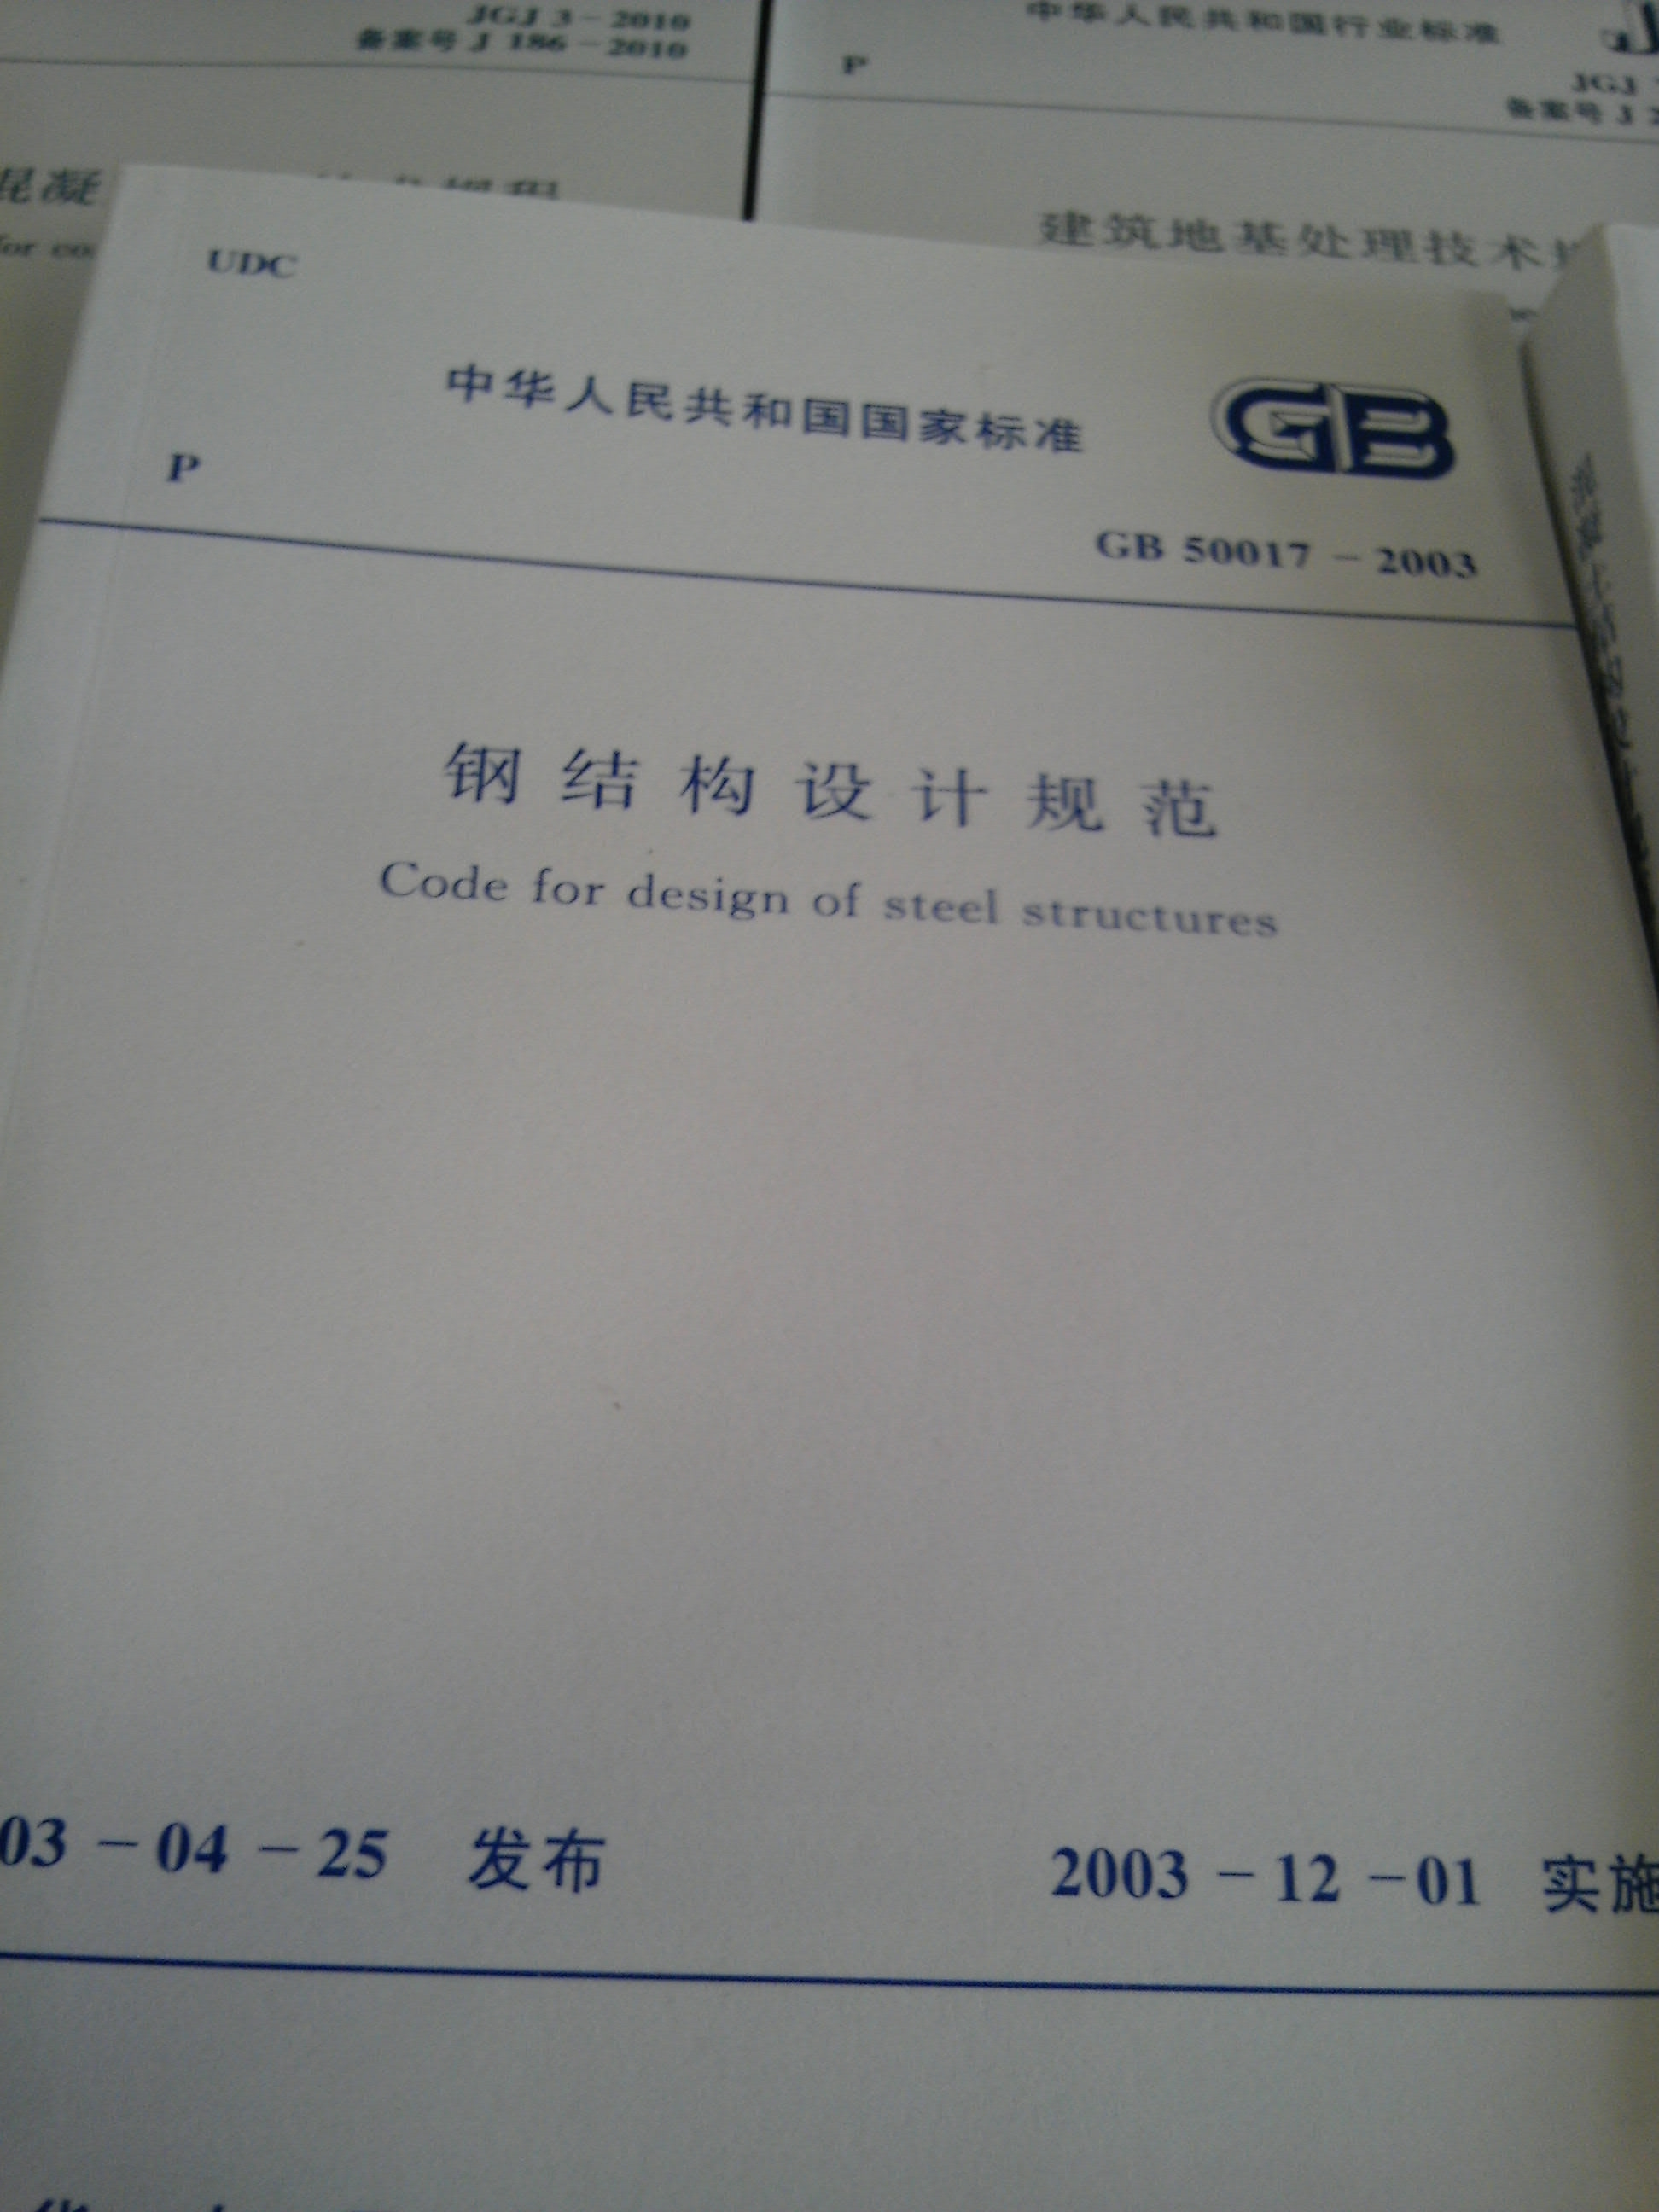 由北京钢铁设计研究总院会同有关设计、教学和科研单位组成修订编制小组，对《钢结构设计规范》GB17-88进行全面修订由建设部以公告第147号文颁布，自2003年12月1日实施。本规范共11章和6个附录。其主要内容包括总则、术语和符号、基本设计规定、受弯构件的计算、轴心受力构件和拉弯、压弯构件的计算、疲劳计算、连接计算、构造要求、塑性设计、钢管结构、钢与混凝土组合梁。本次修订在对原规范条文进行修改、调整和删除的同时，新增了许多内容，如荷载和荷载效应计算，单轴对称截面轴压构件考虑绕对称轴弯扭屈曲的计算方法、带有摇摆柱的无支撑纯框架柱和弱支撑框架柱的计算长度确定方法、梁与柱的刚性连接，连接节点处板件的计算、插入式柱脚、埋入式柱脚及外包式柱脚的设计和构造规定，大跨度屋盖结构的设计和构造要求的规定、提高寒冷地区结构抗脆断能力的要求的规定、空间圆管节点强度计算公式等。